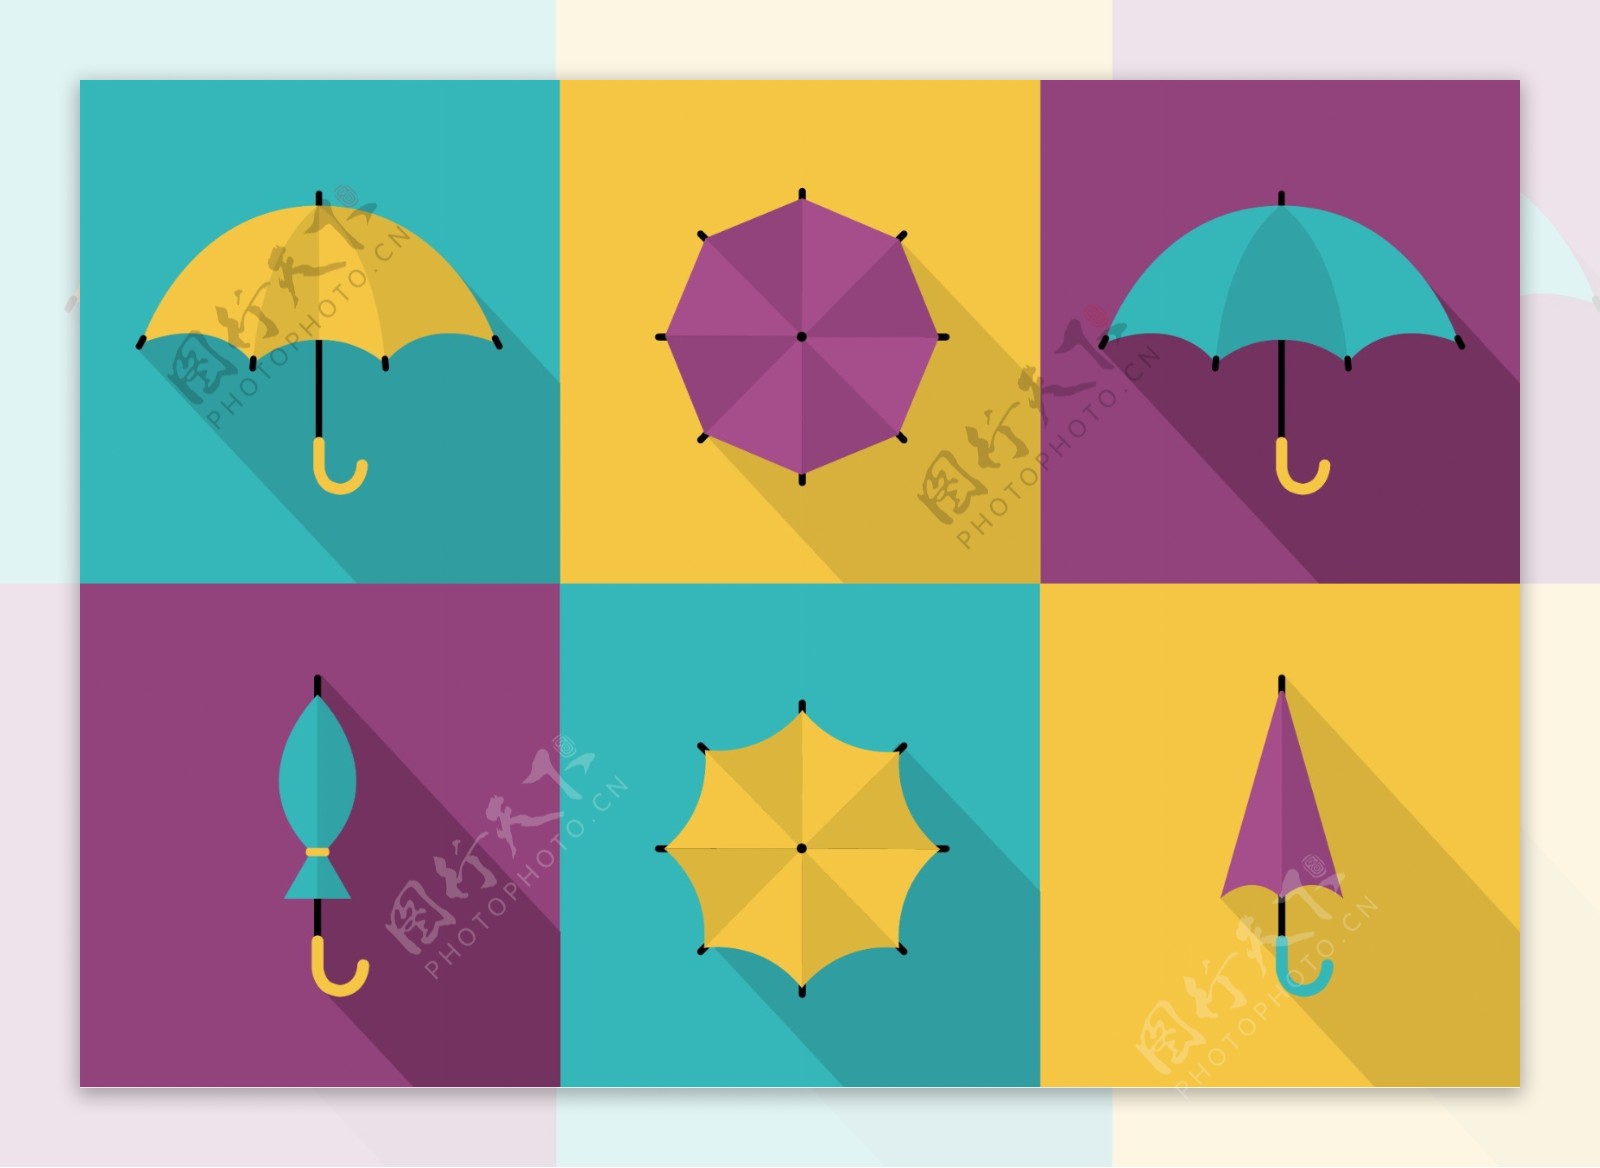 五颜六色的雨伞矢量背景自由设置